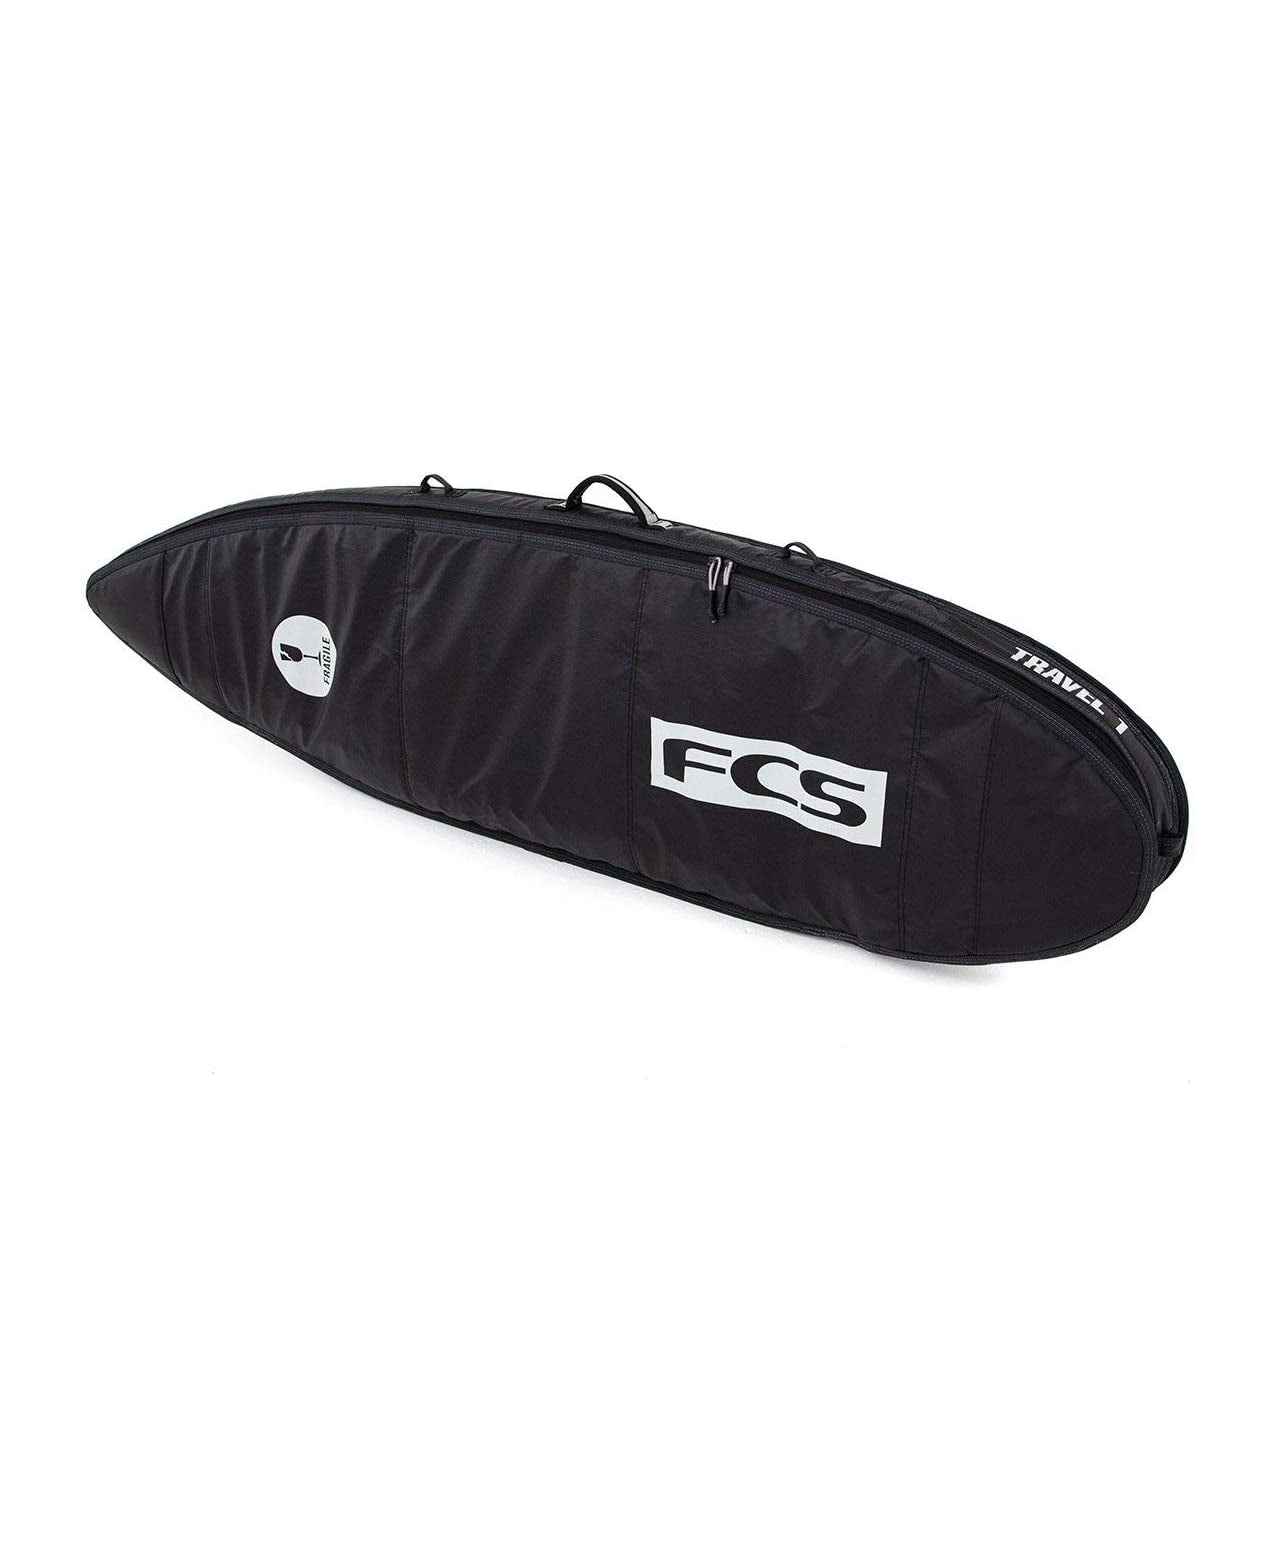 FCS Travel 1 Funboard Boardbag Black-Grey 6ft0in